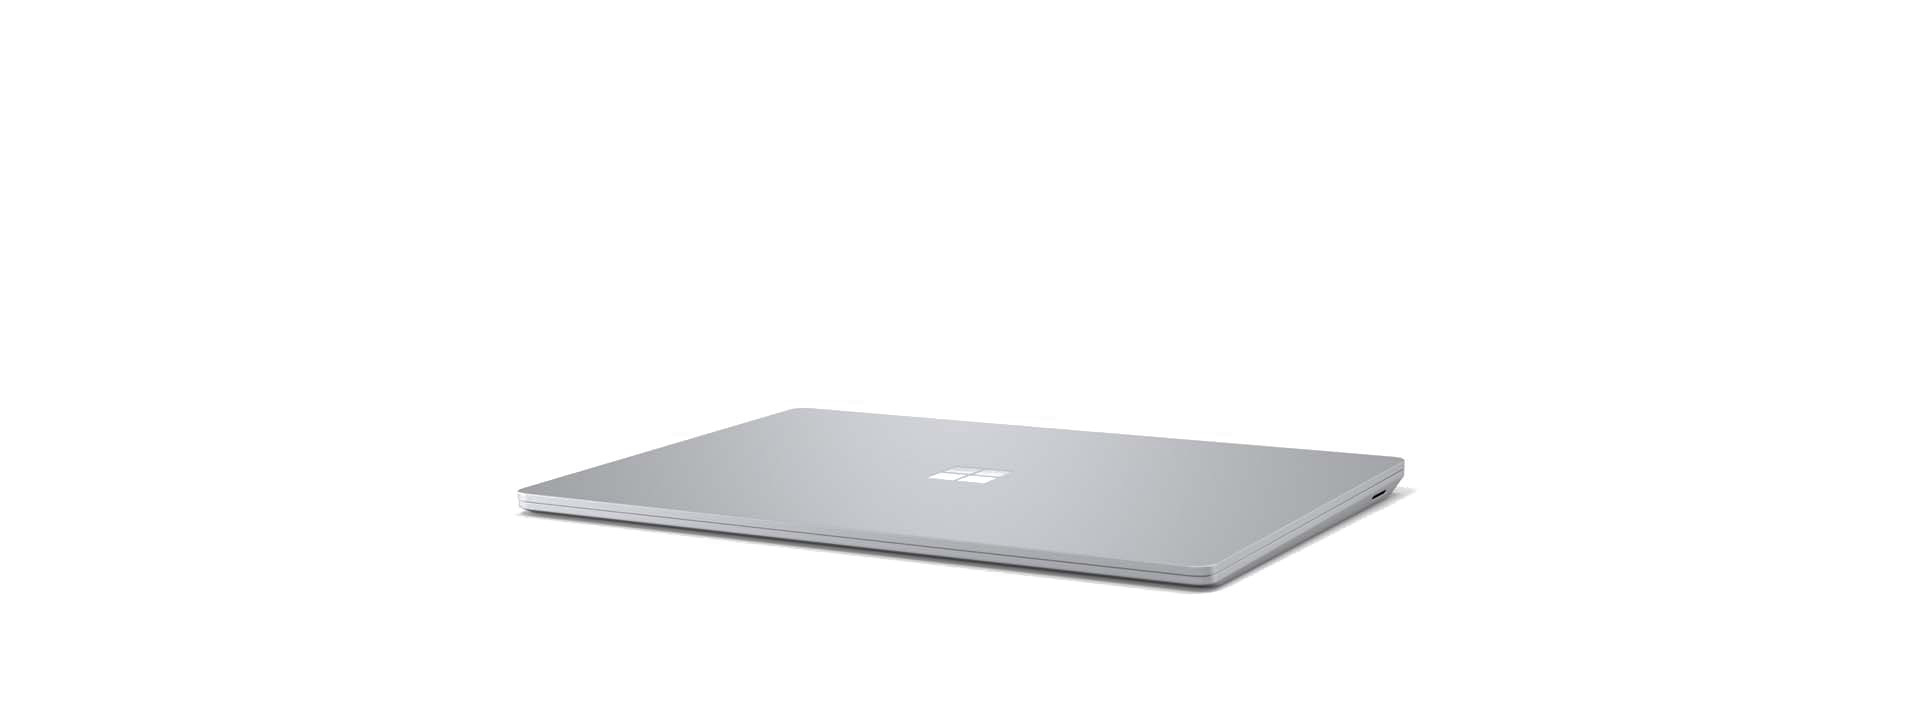 Surface Laptop 3 pada satu sudut dengan skrin tertutup